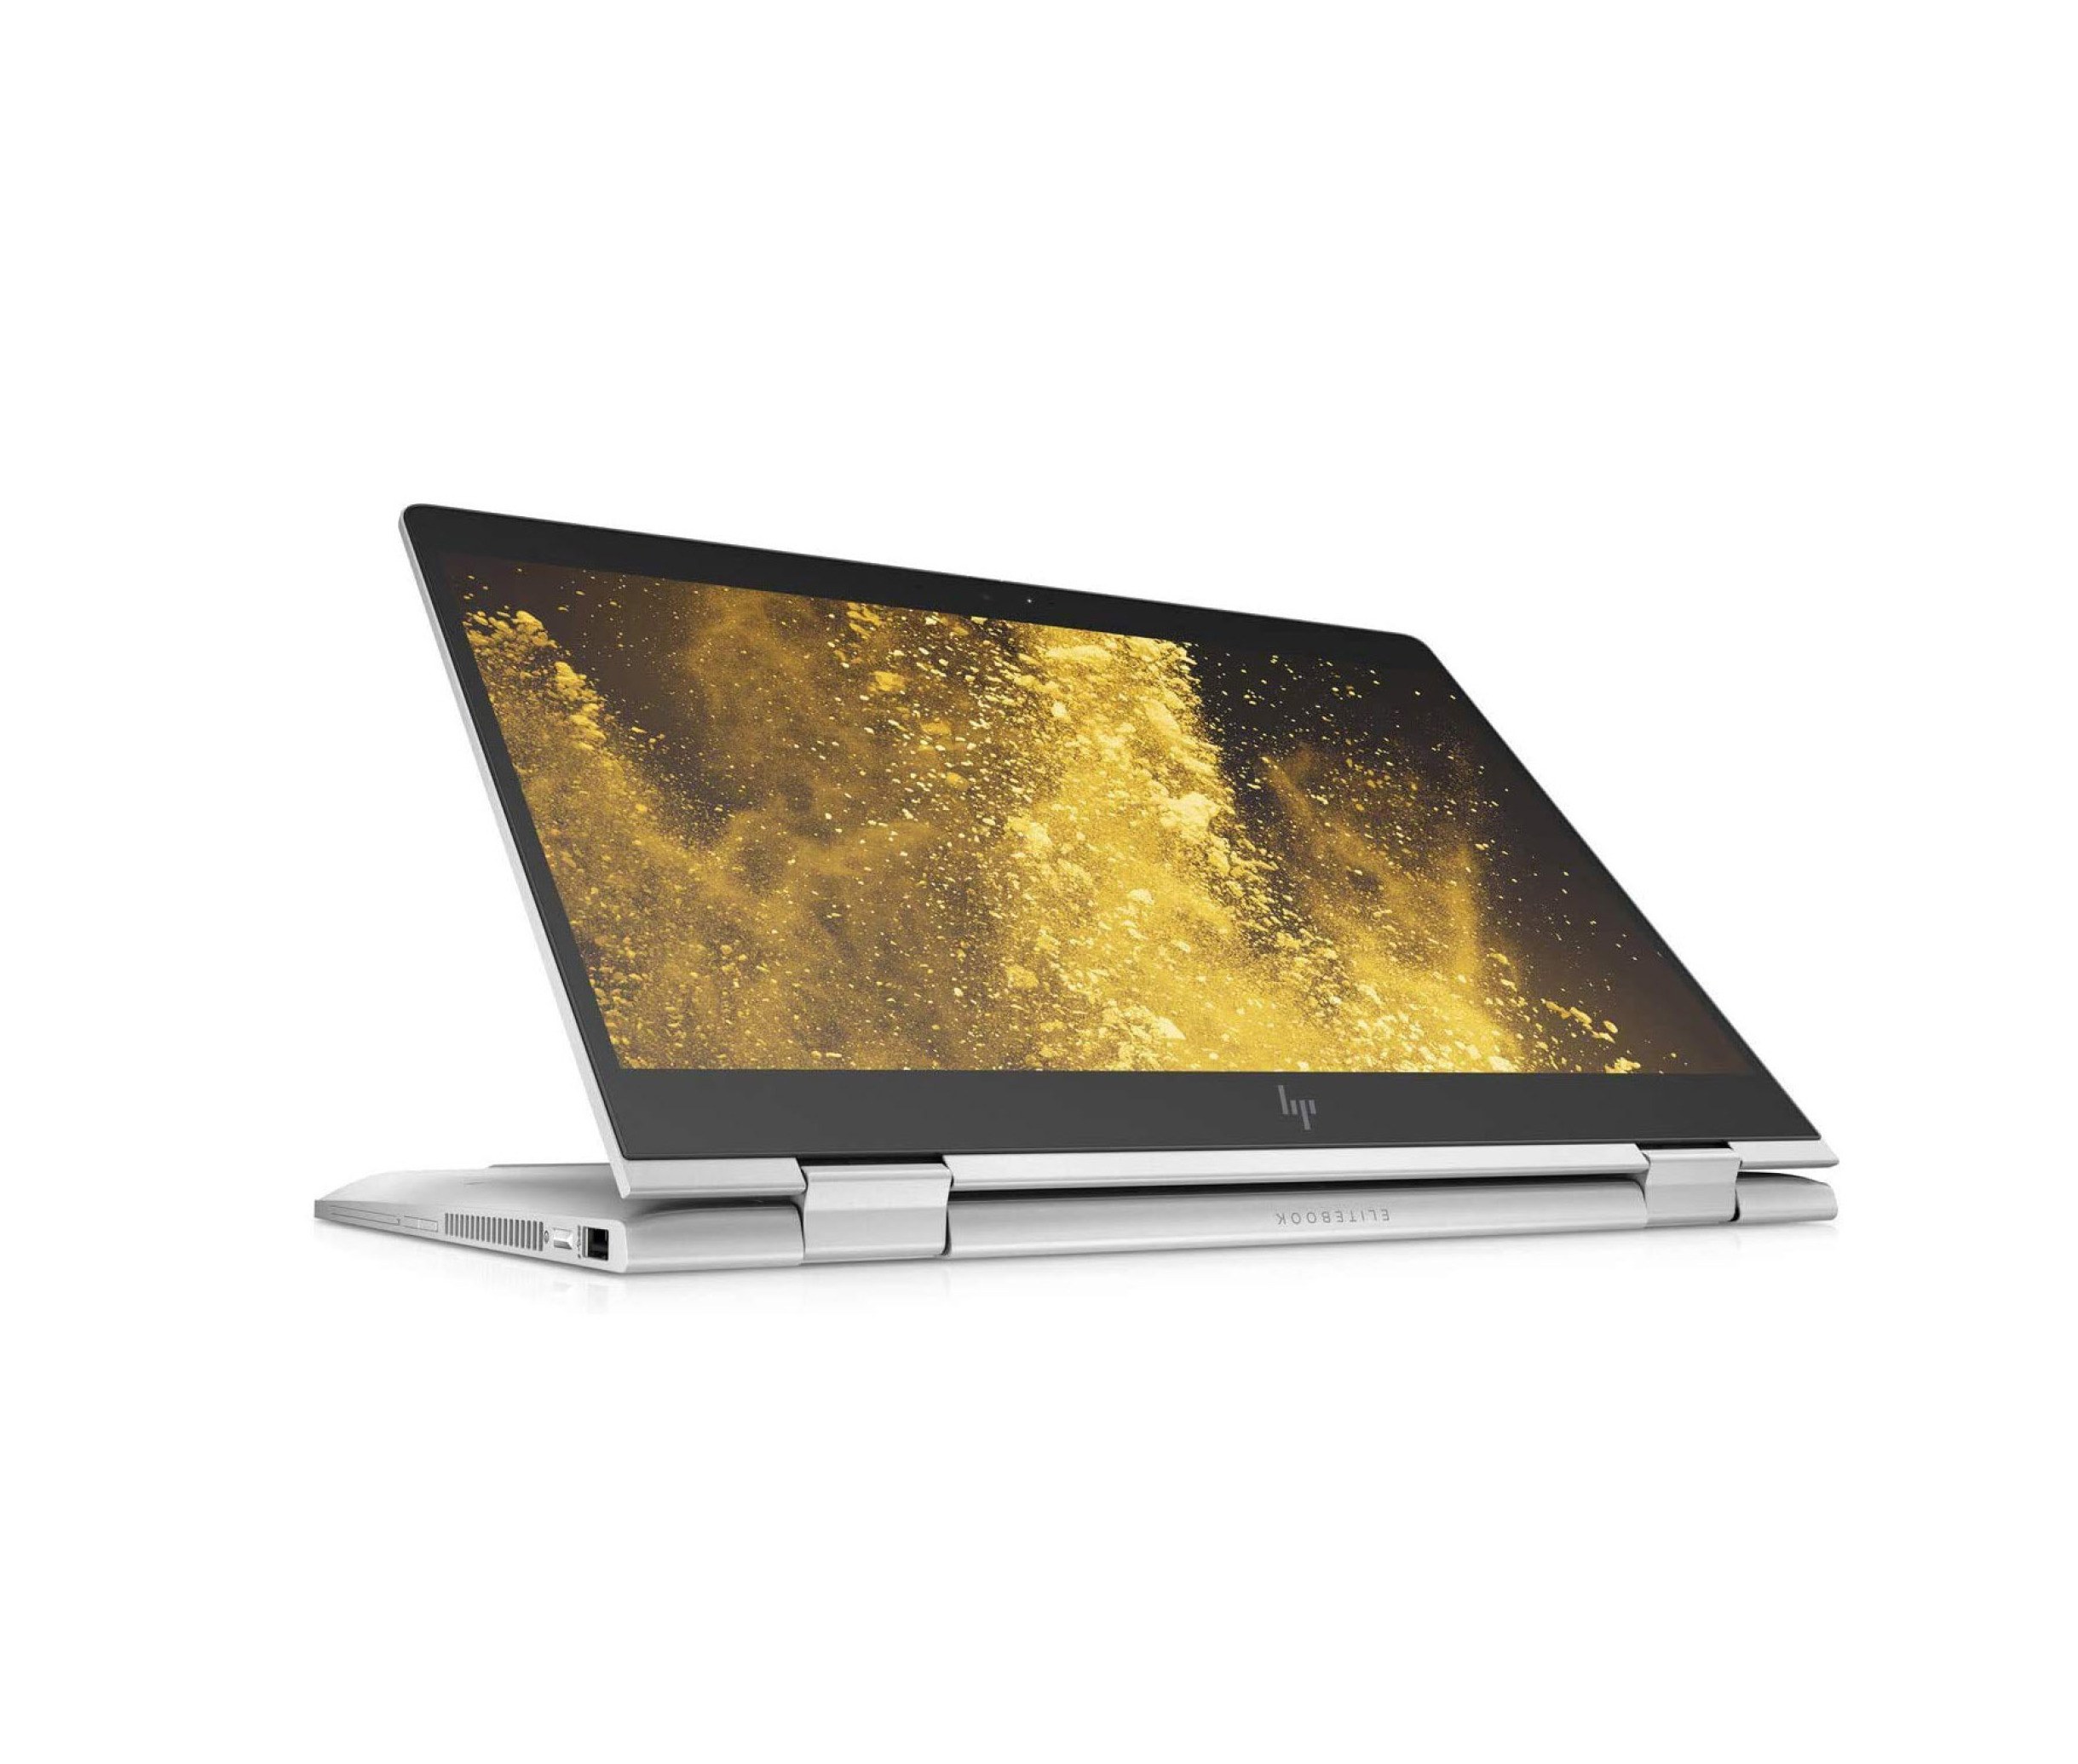  خرید،قیمت و مشخصات لپ تاپ 360 درجه لمسی HP EliteBook 1040 G6 X360 - i5 | لاکچری لپ تاپ 